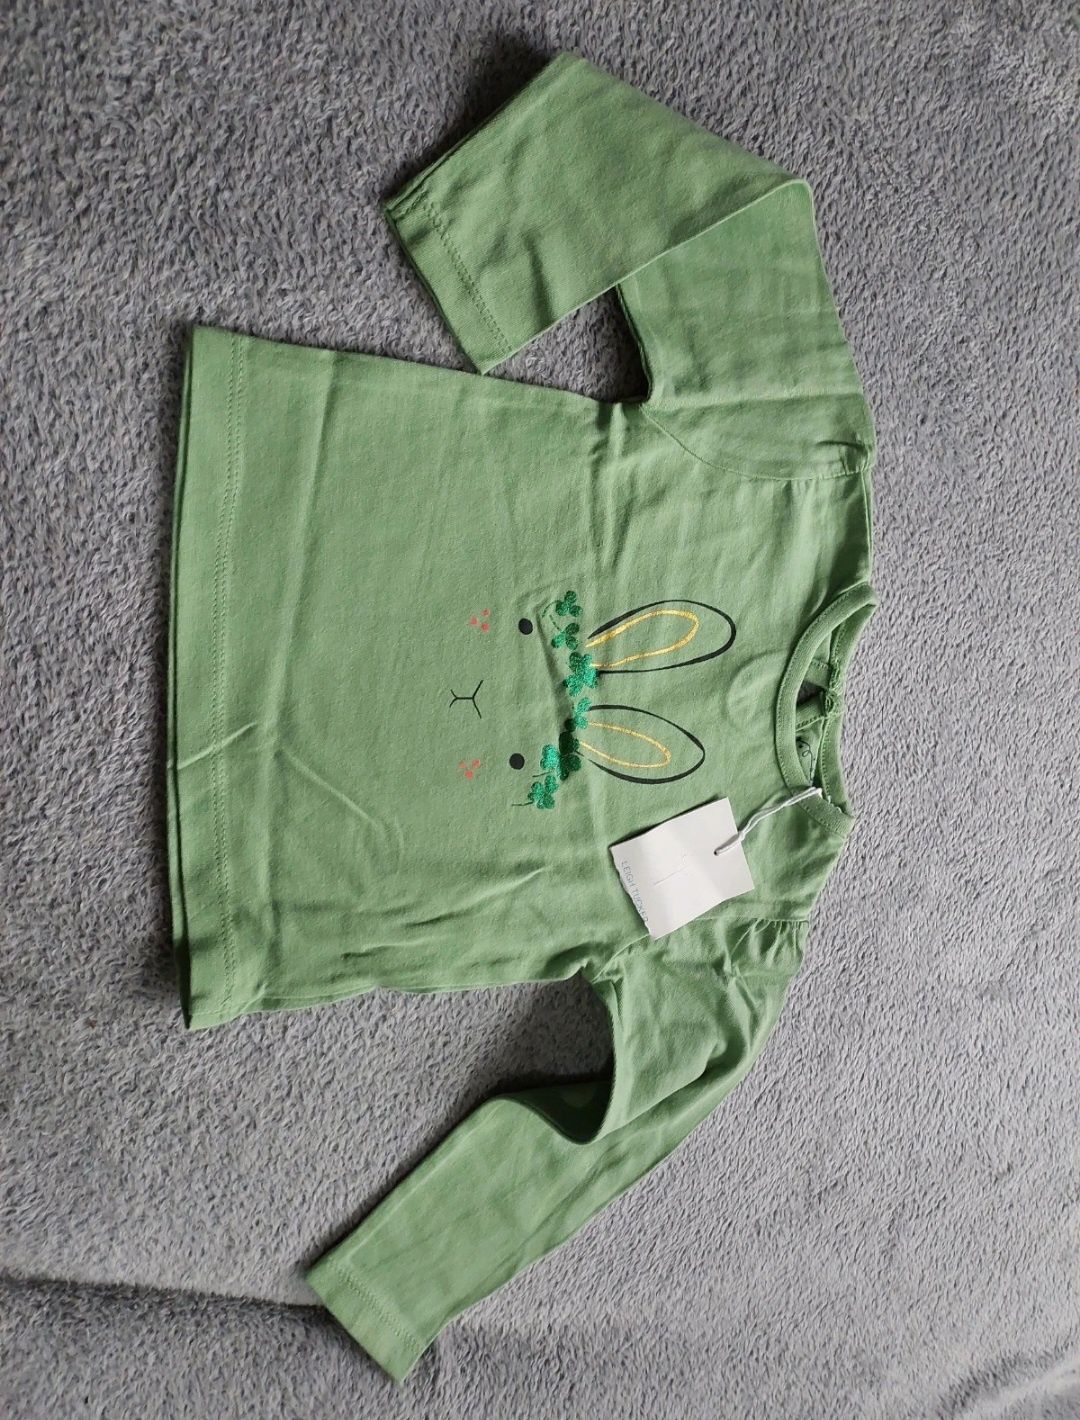 Bluzka koszulka zielona NOWA króli Wielkanoc 80